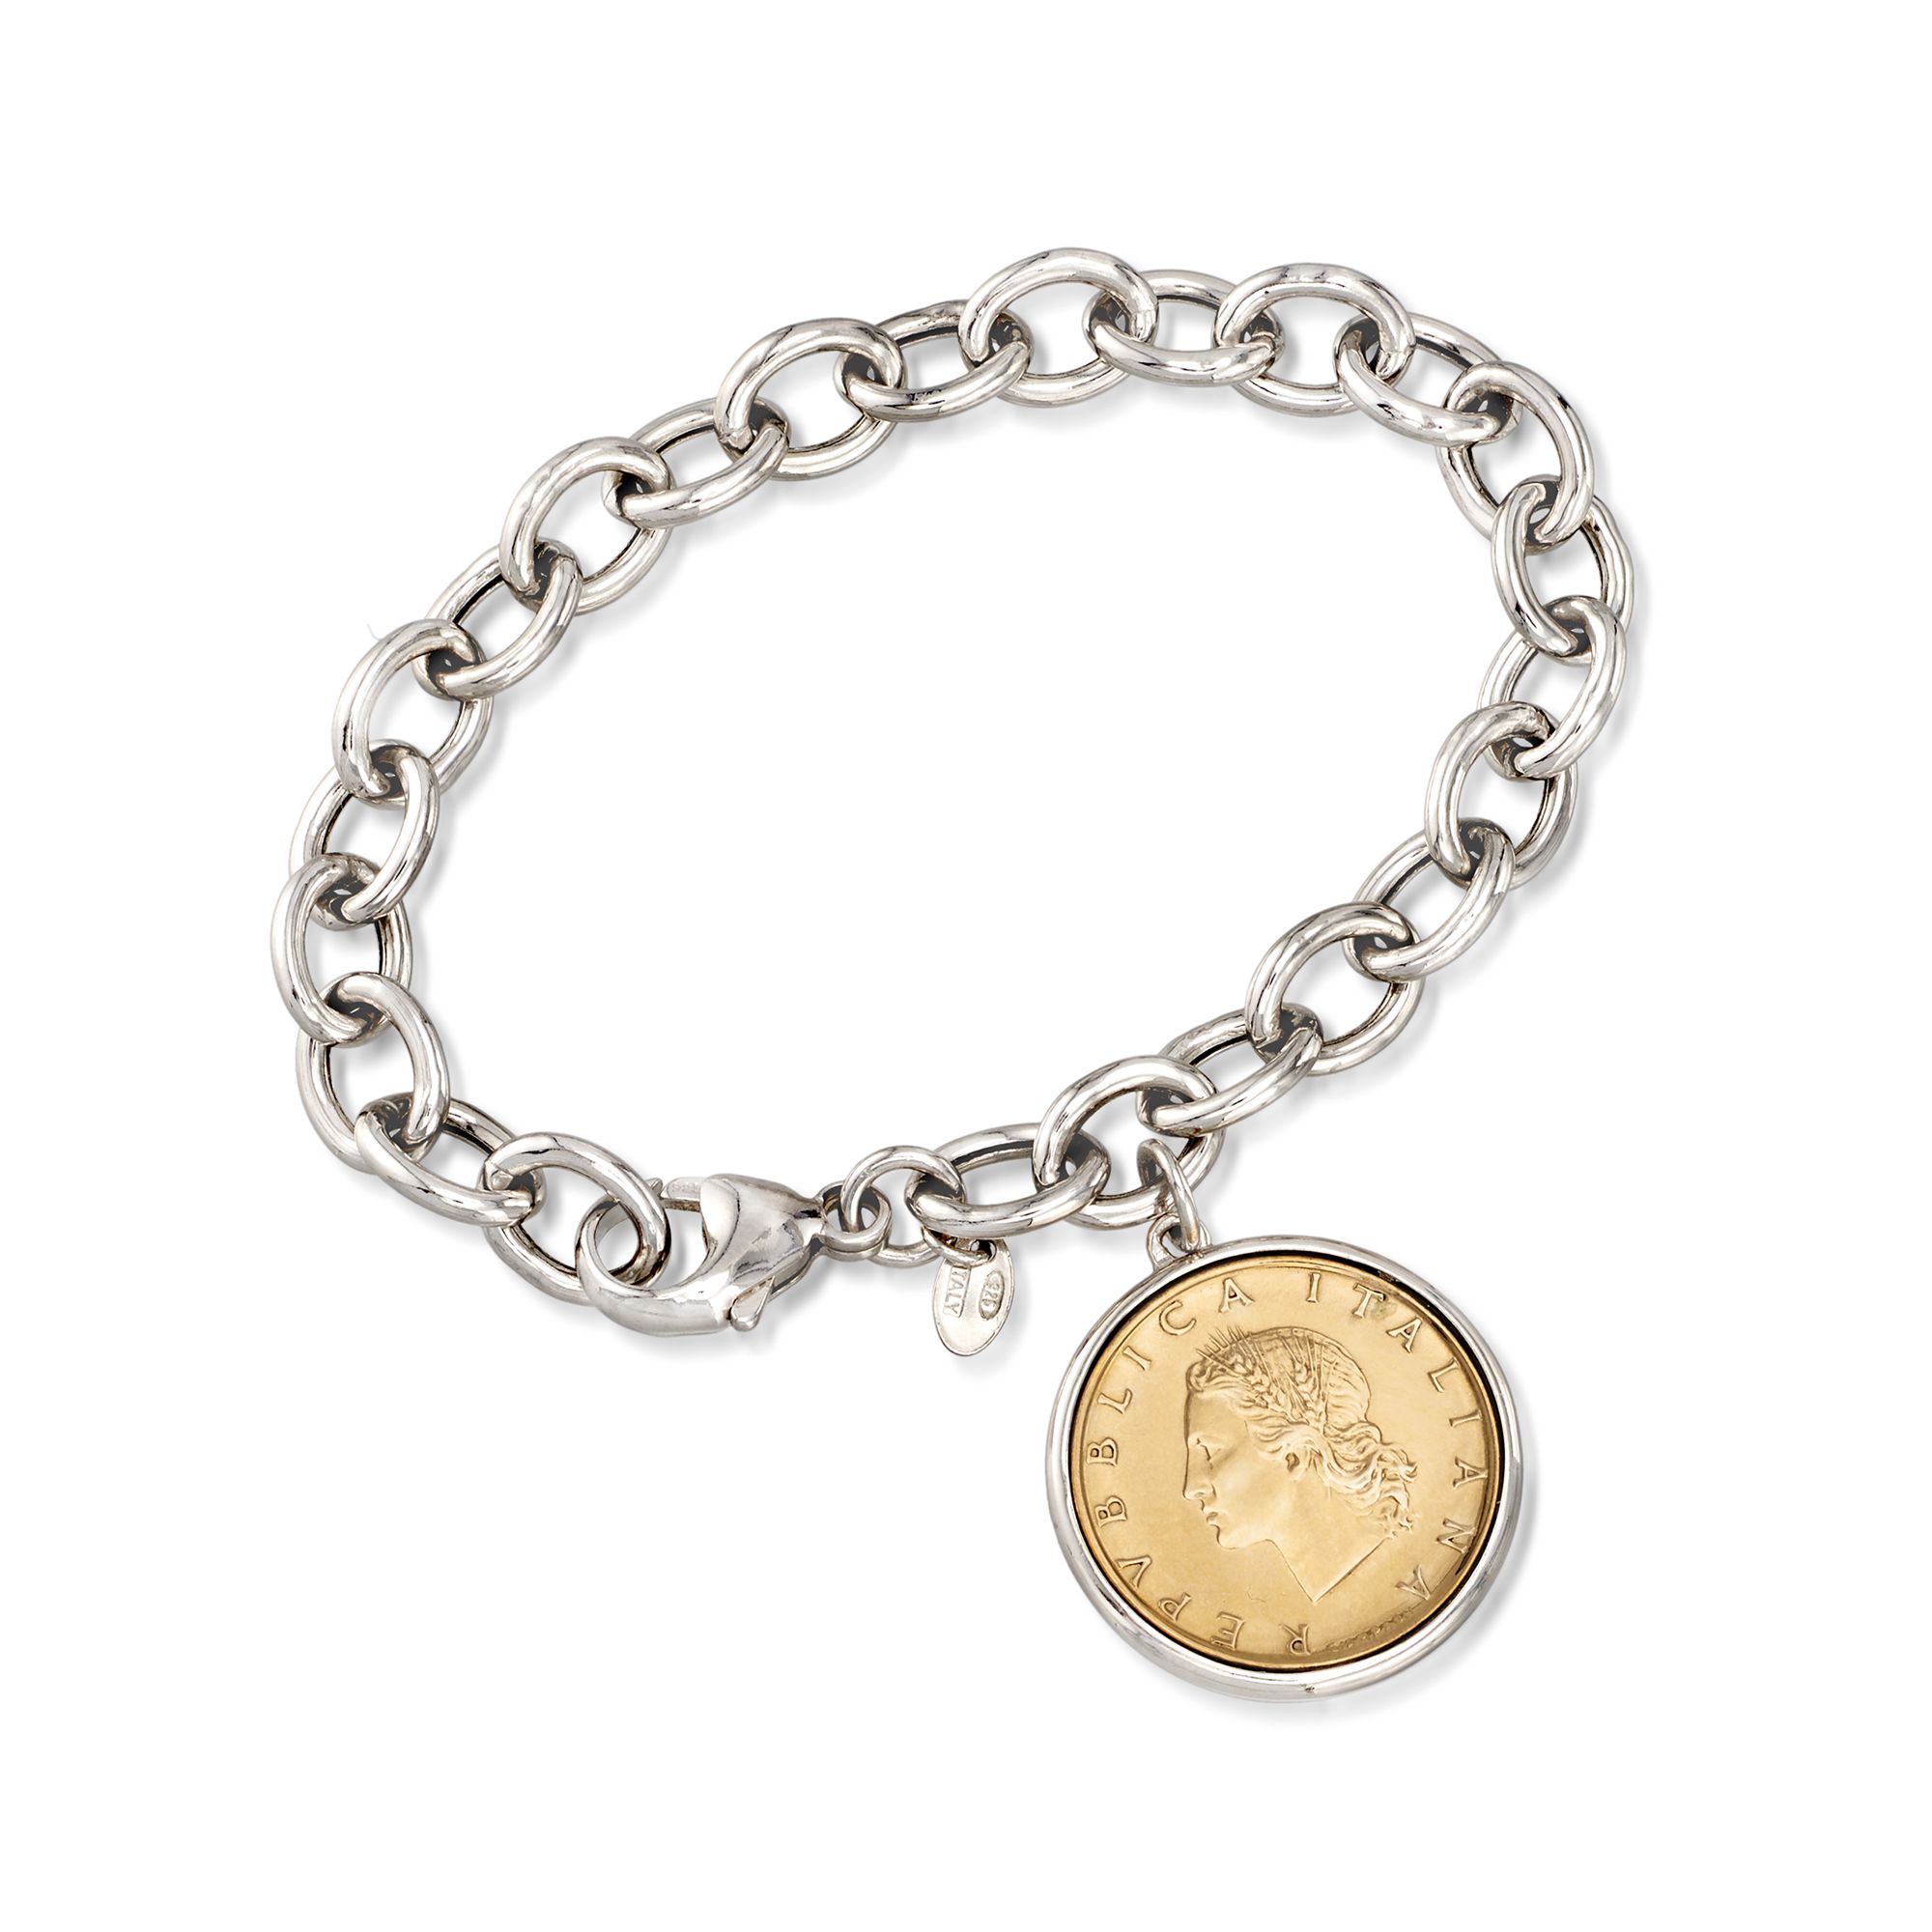 Beads Bohemian Chain Bracelet Coin Charm Bracelet 3 PCsSet for $22.99 |  Dazzleluna